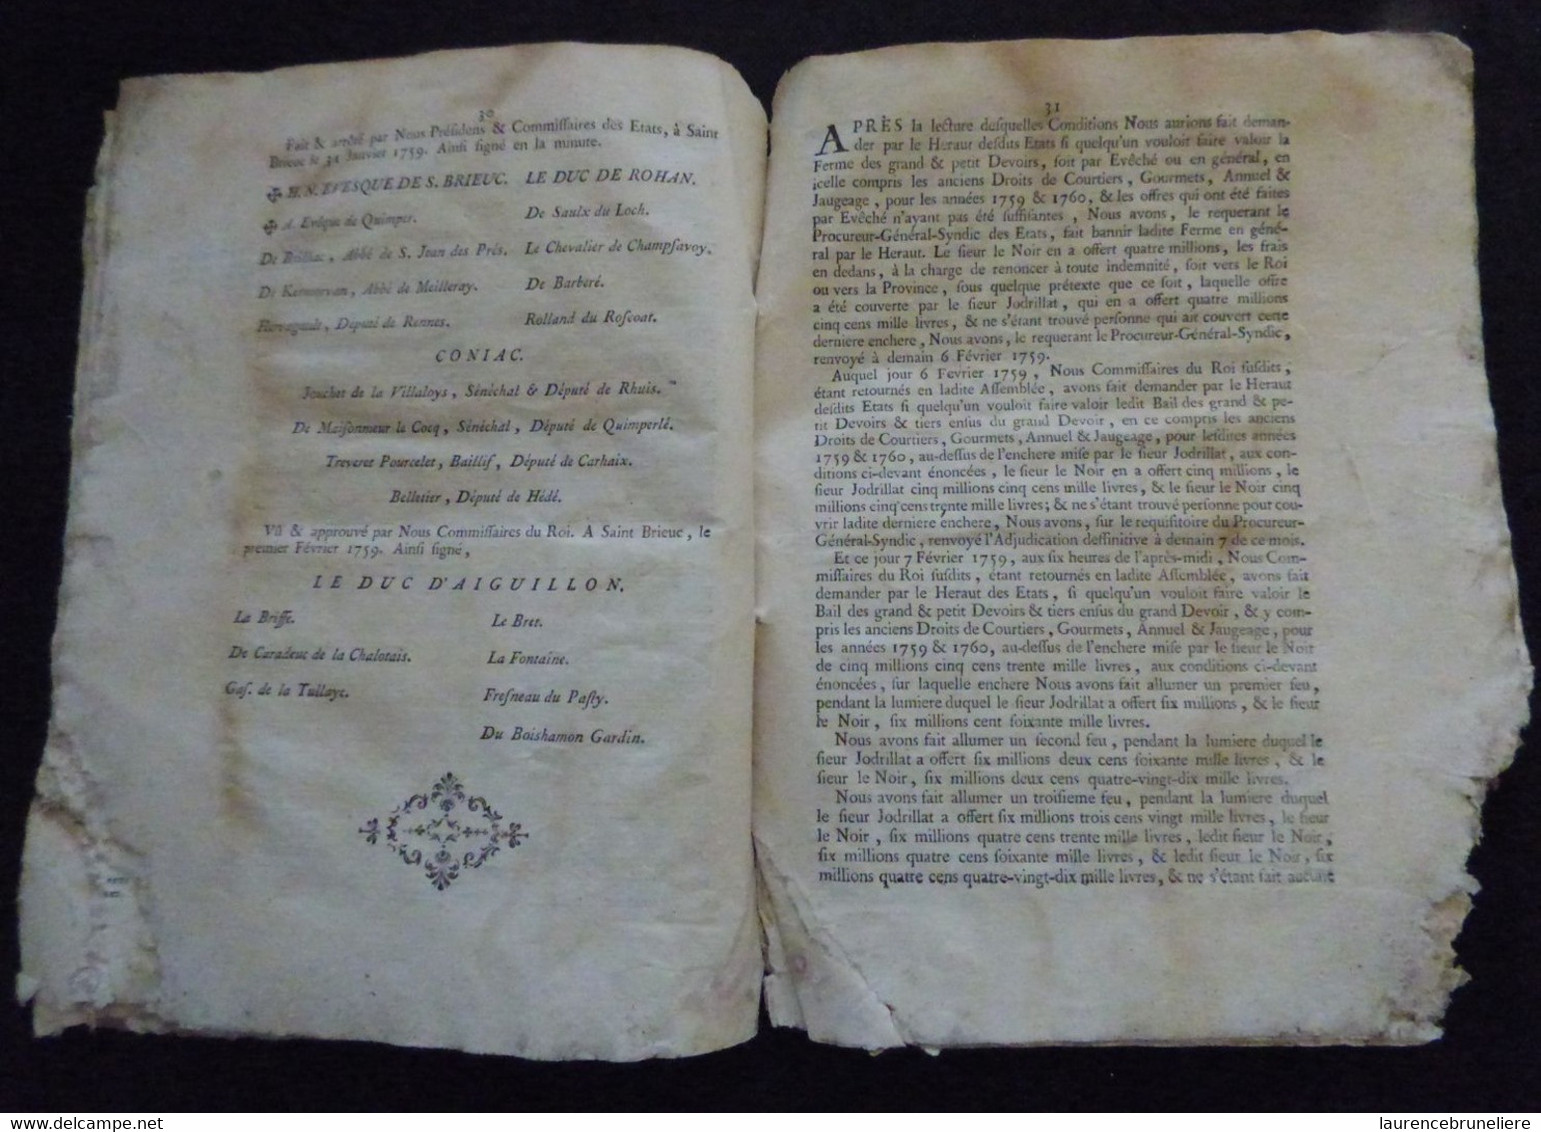 BAIL GENERAL DES DEVOIRS CONSENTI EN LA VILLE DE SAINT-BRIEUC LE 7 FEVRIER 1759 SUR PAPIER PARCHEMIN - Historical Documents